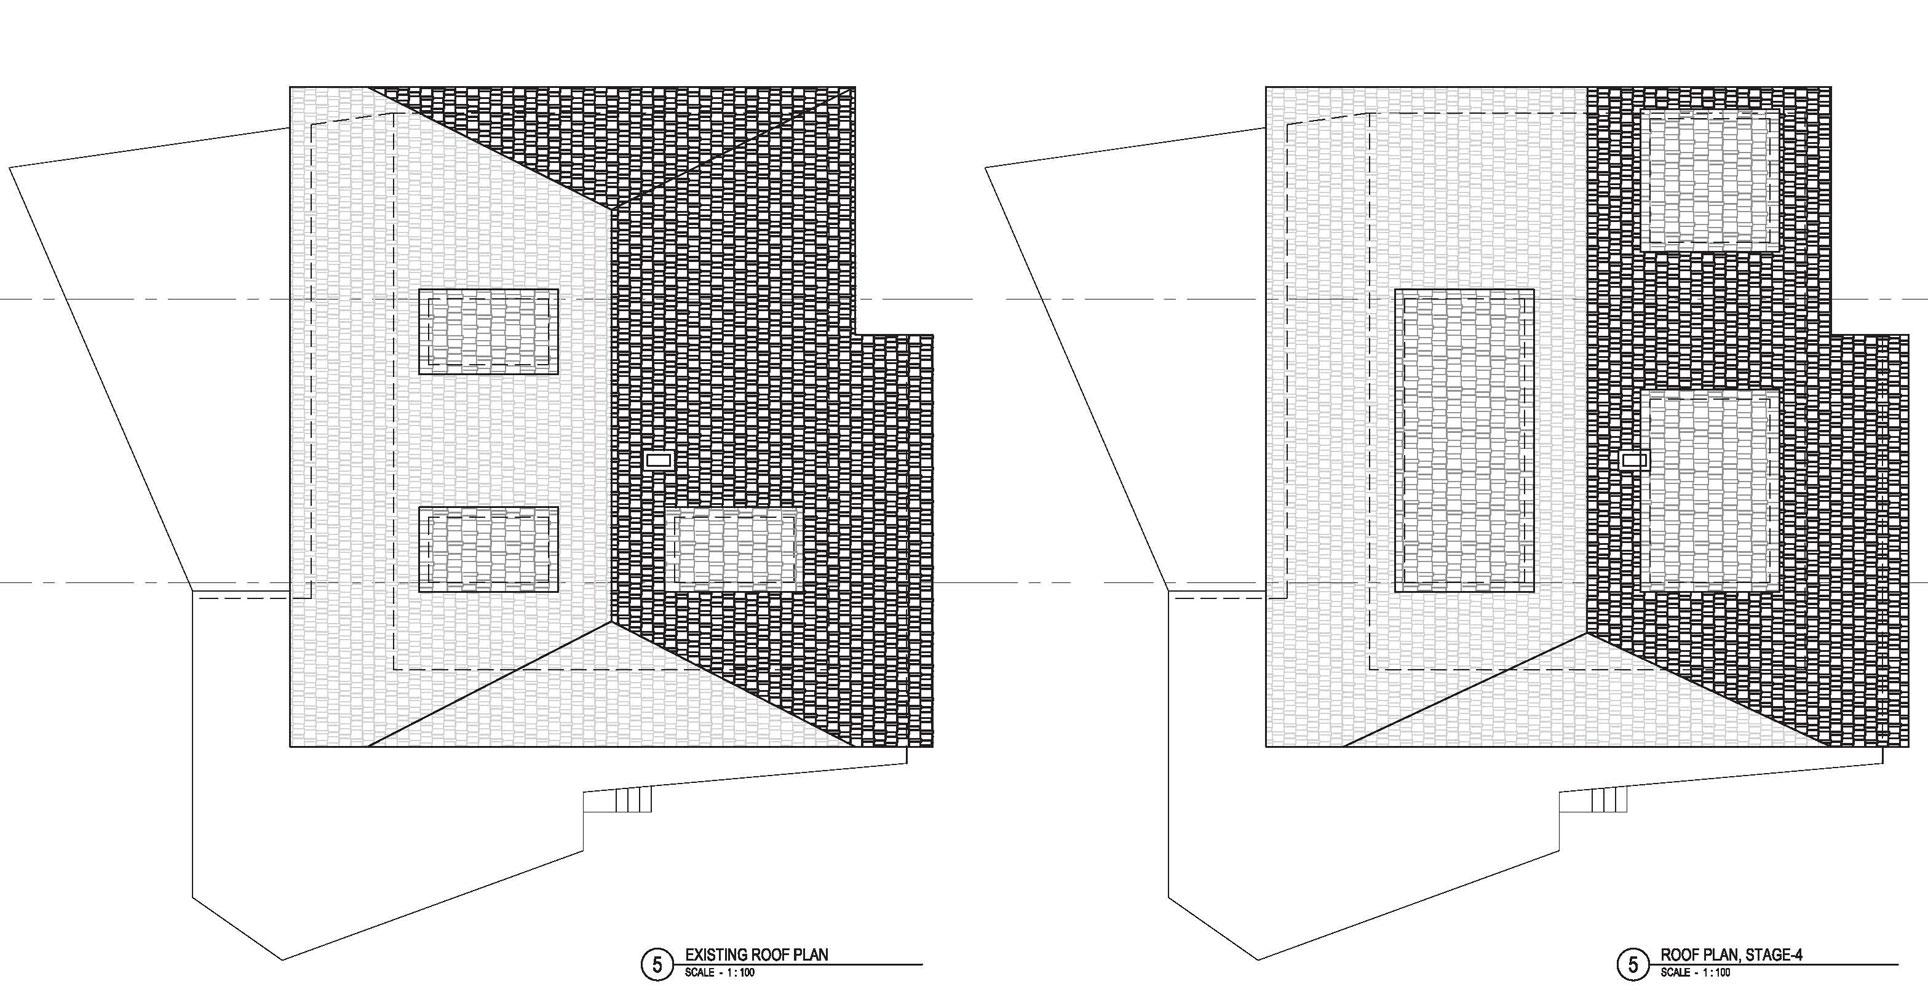 Architectural rendering concept schematic design architecture illustration designer Shalum Shalumov